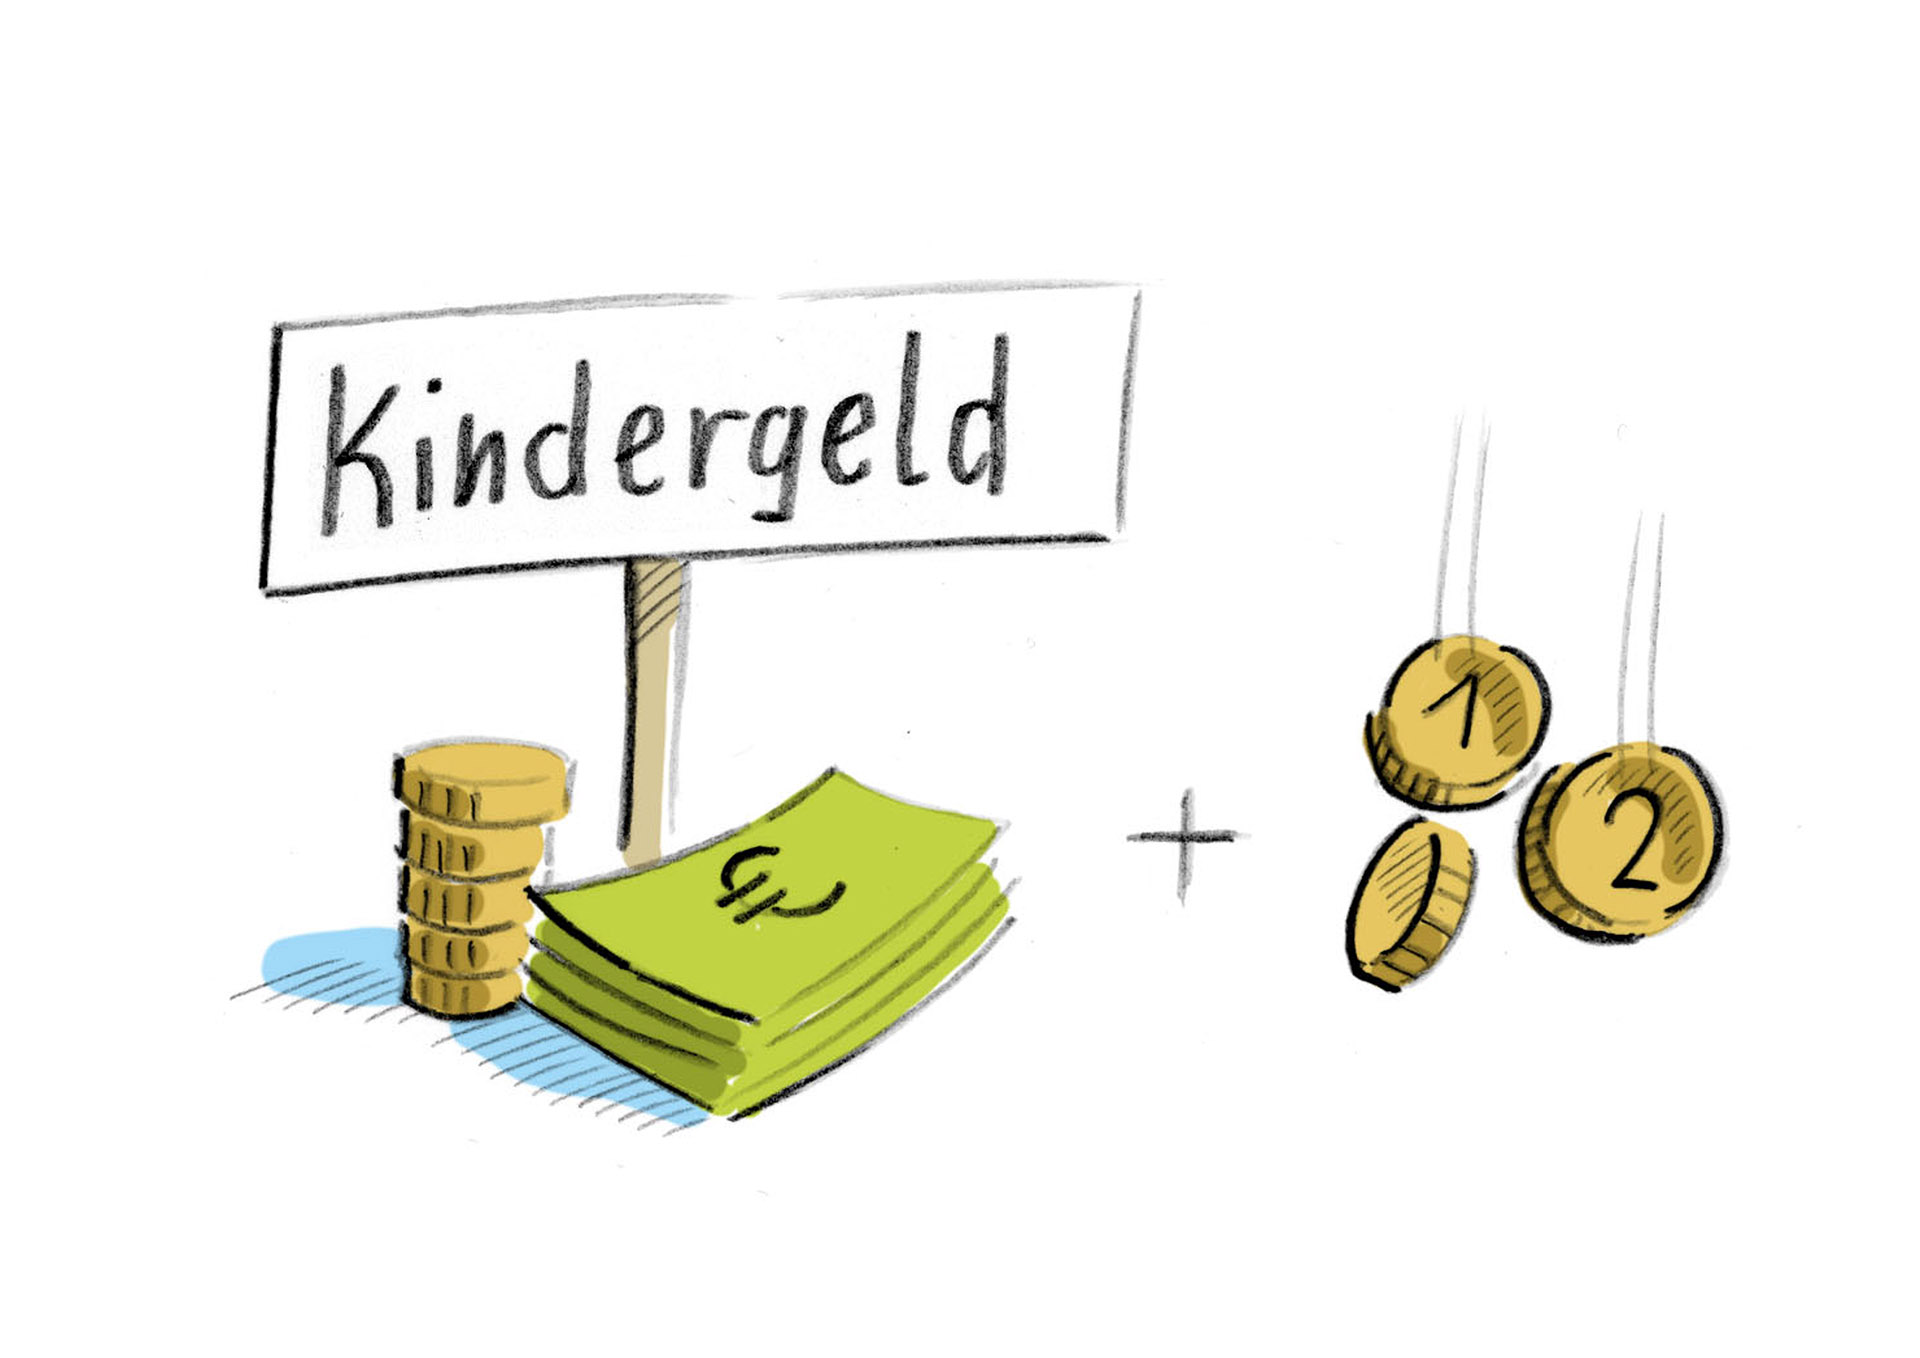 Bild: Schild mit Kinder-Geld und Geld-Scheine und Münzen